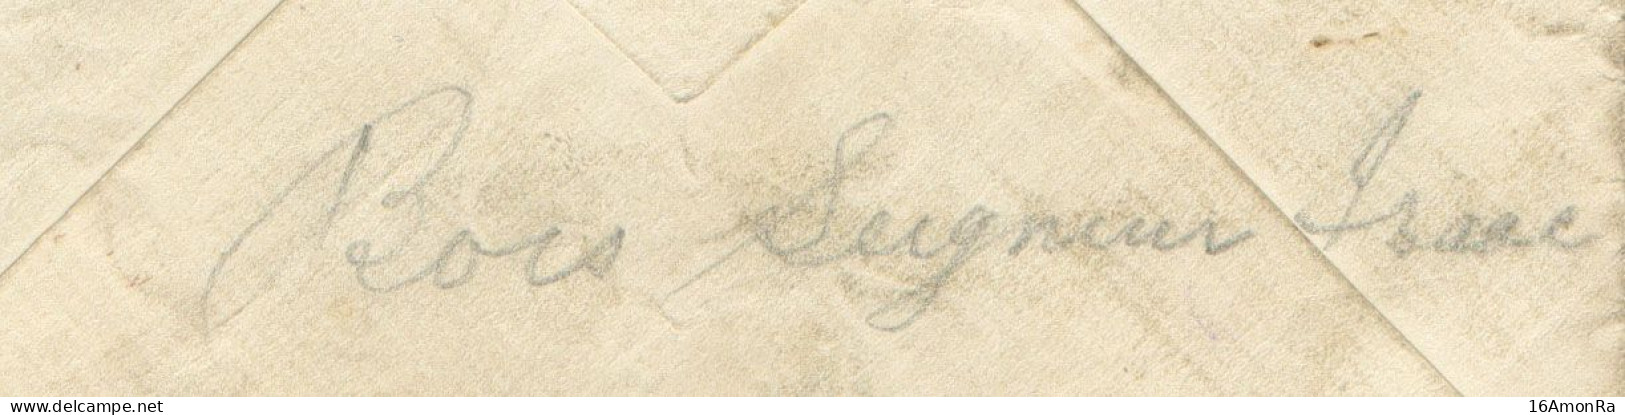 Enveloppe écrite Par Un Belge De Bois-Seigneur-Isaac (près Lillois Et Waterloo) Pour Compte D'un Prisonnier Britannique - Belgische Armee